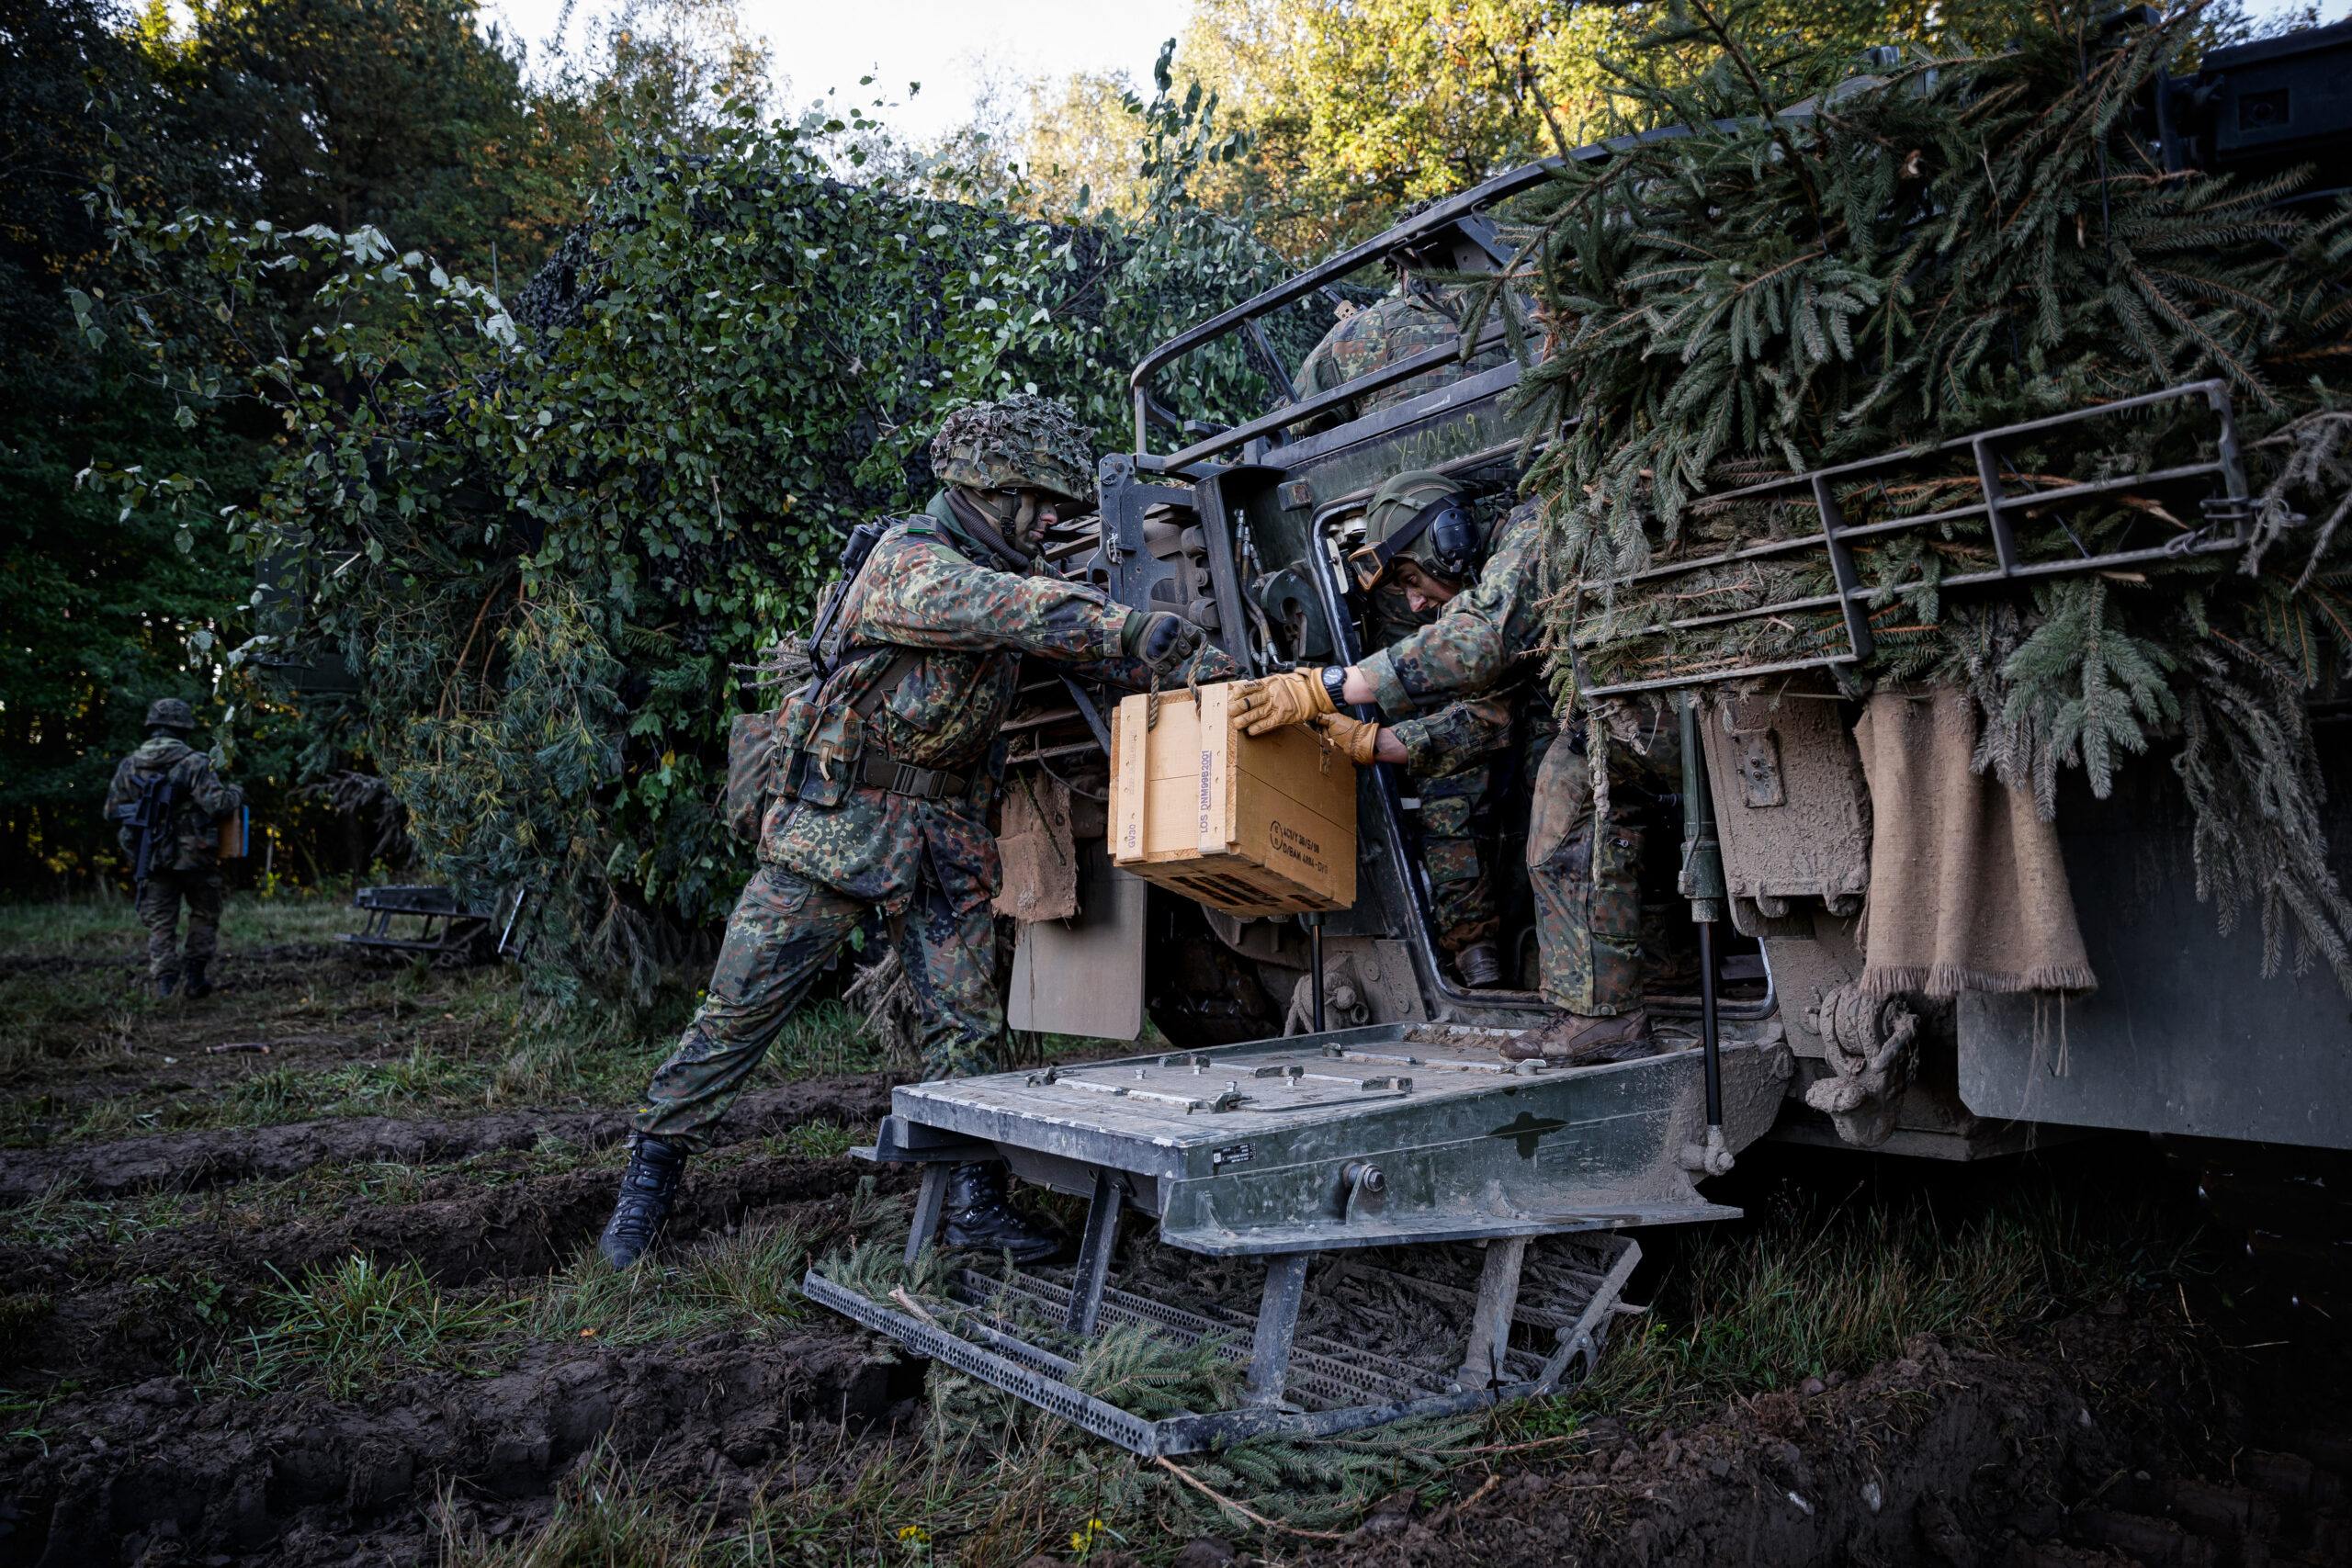 Soldaten versorgen einen Schützenpanzer Puma mit Munition an der Station Versorgung eines Kampftruppenbataillons im Rahmen der Ausbildungslehrübung Landoperationen auf dem Truppenübungsplatz Bergen am 07.10.2022. Blauer Bund